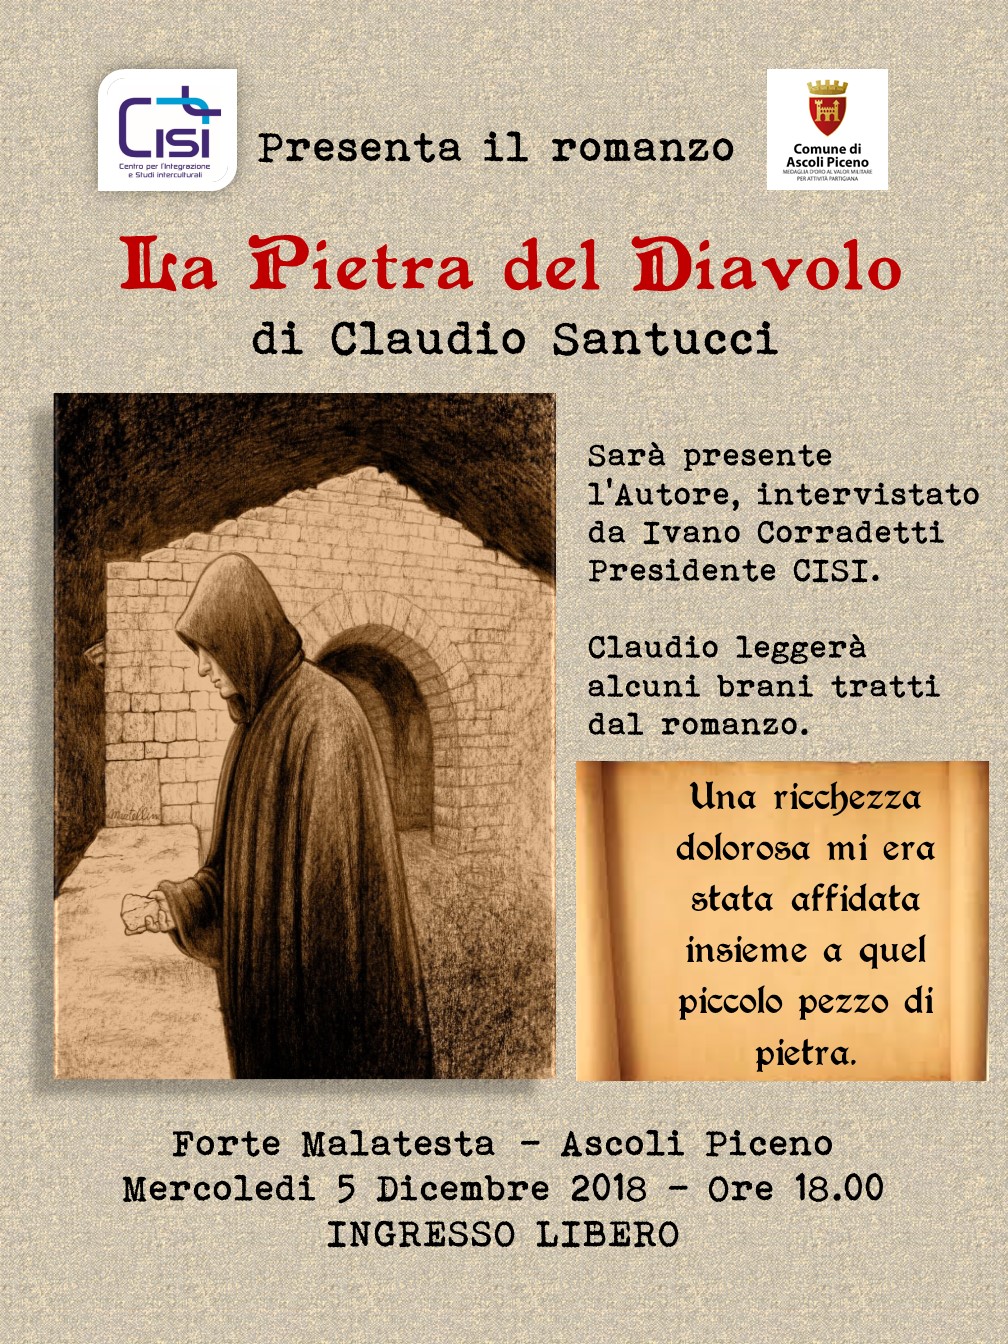 Claudio Santucci, “La Pietra Del Diavolo”